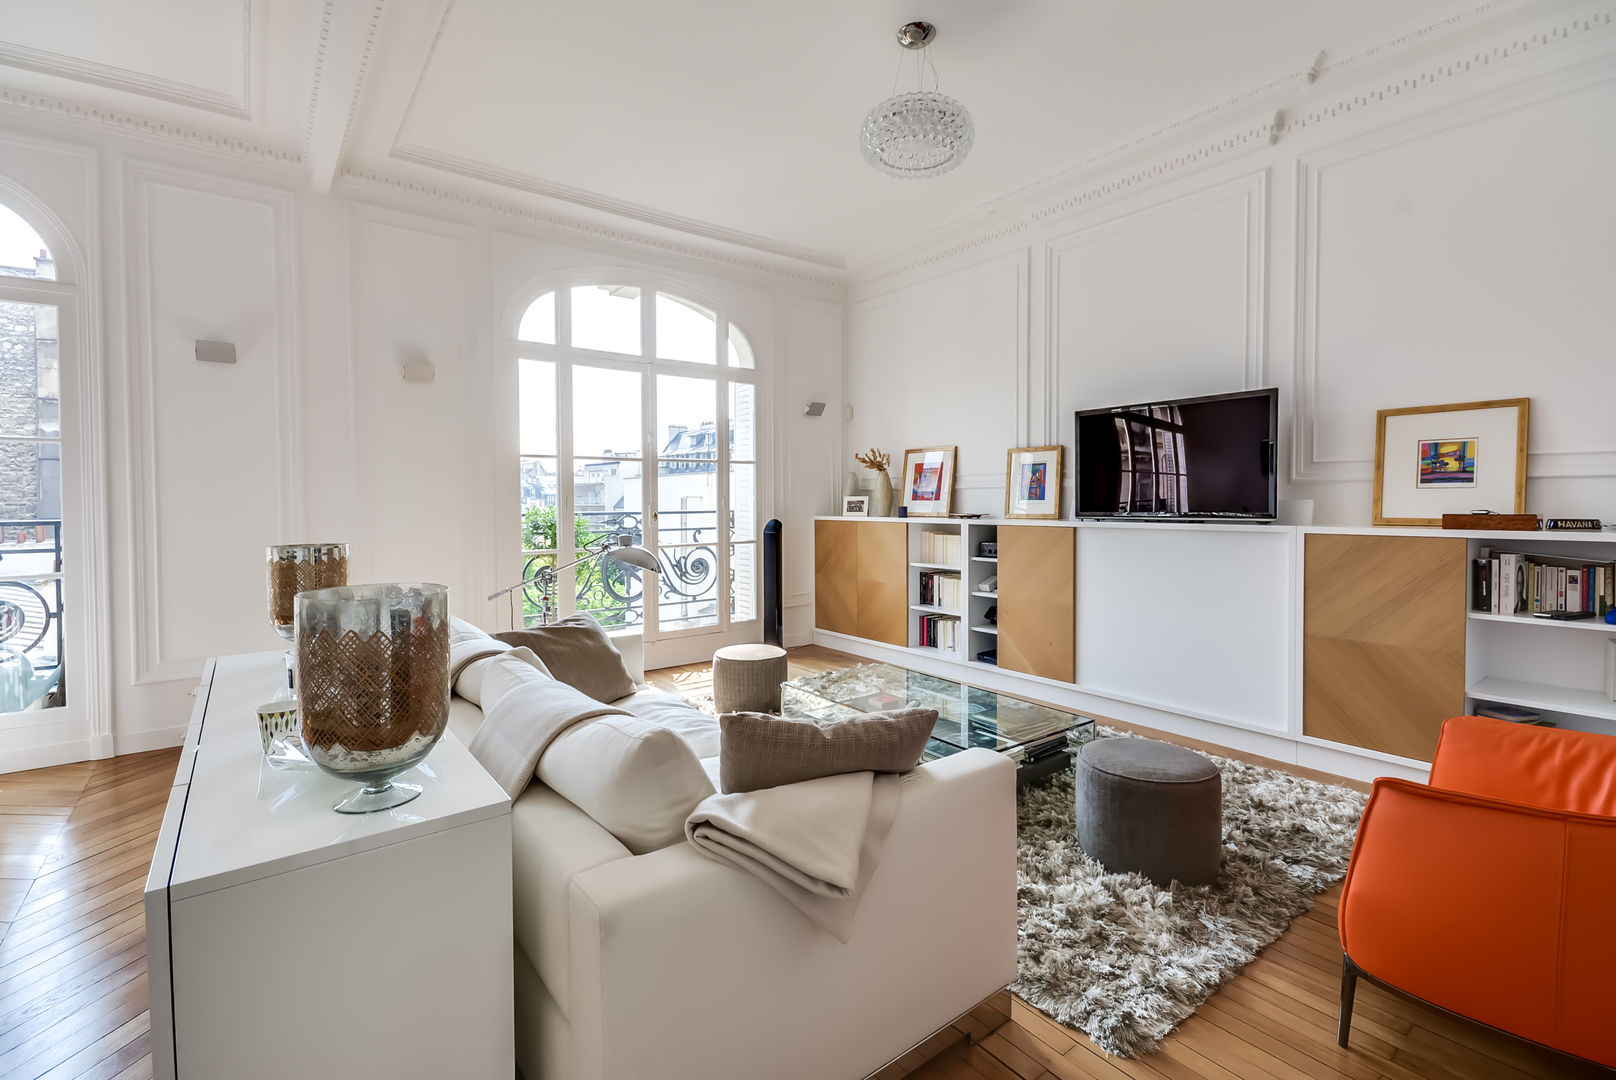 Un appartement haussmanien revisité - Paris 16e, ATELIER FB ATELIER FB ห้องนั่งเล่น